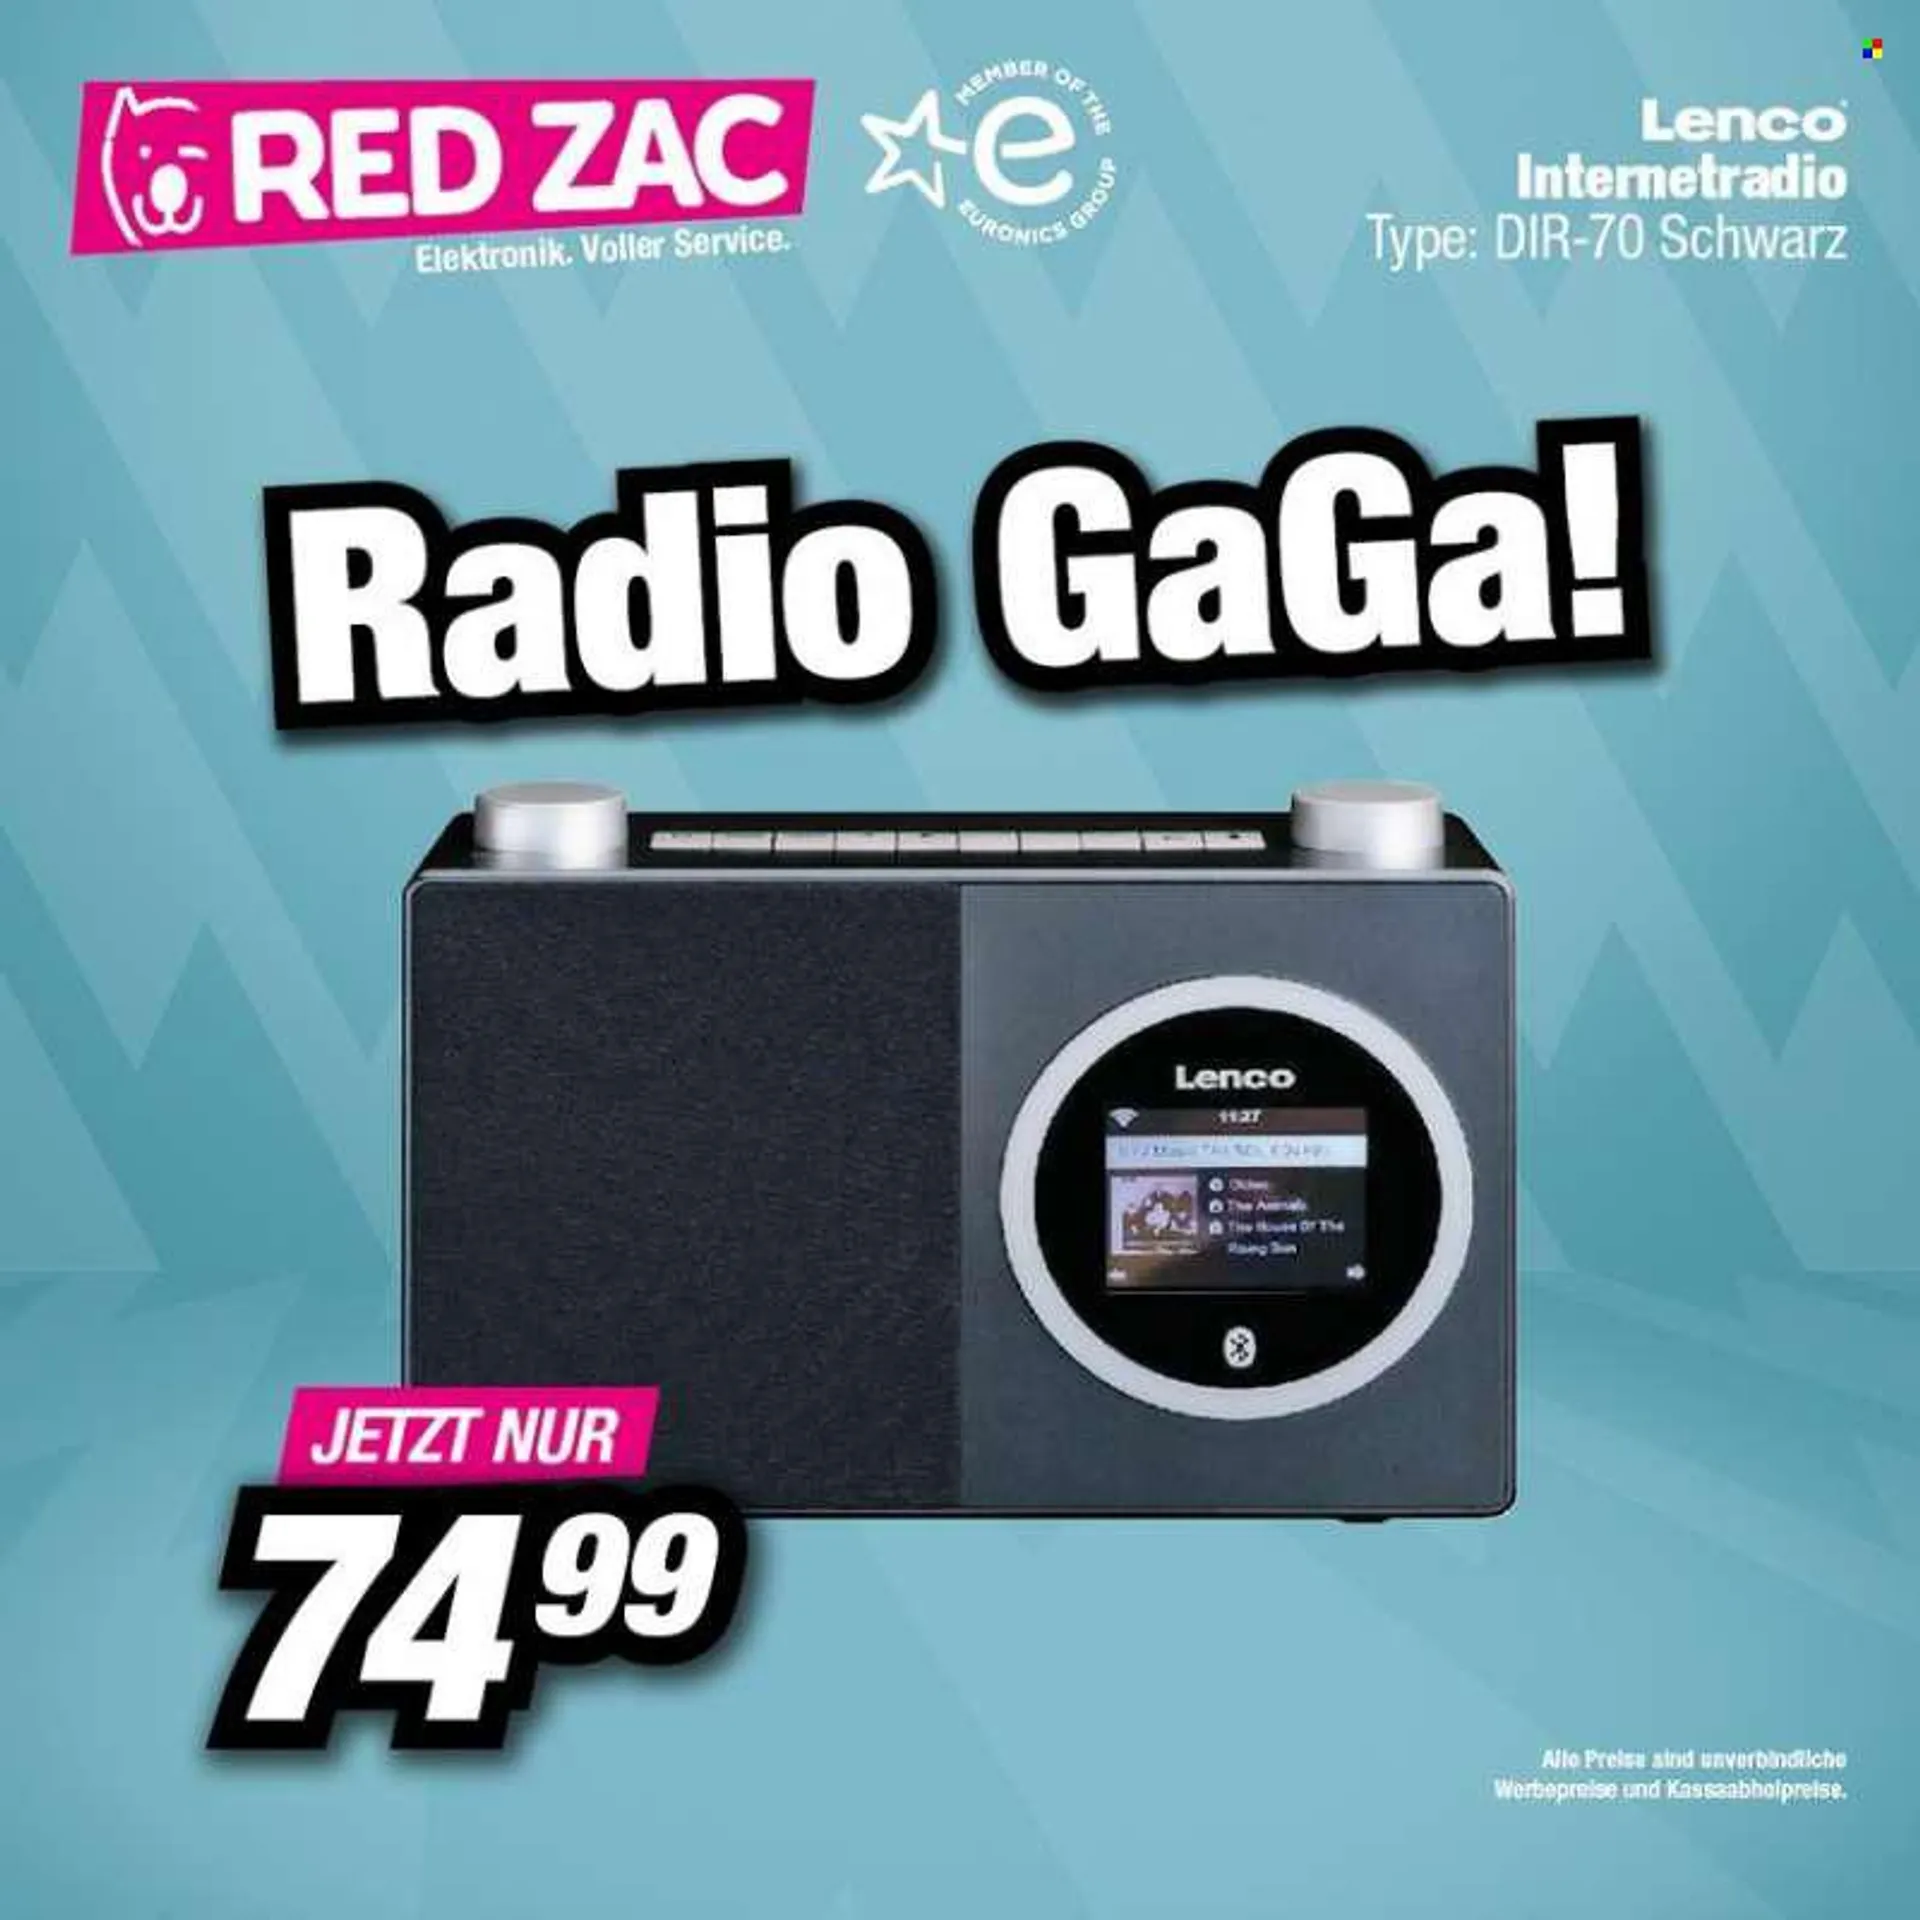 Angebote RED ZAC - Verkaufsprodukte - Internet Radio, Radio. Seite 2.